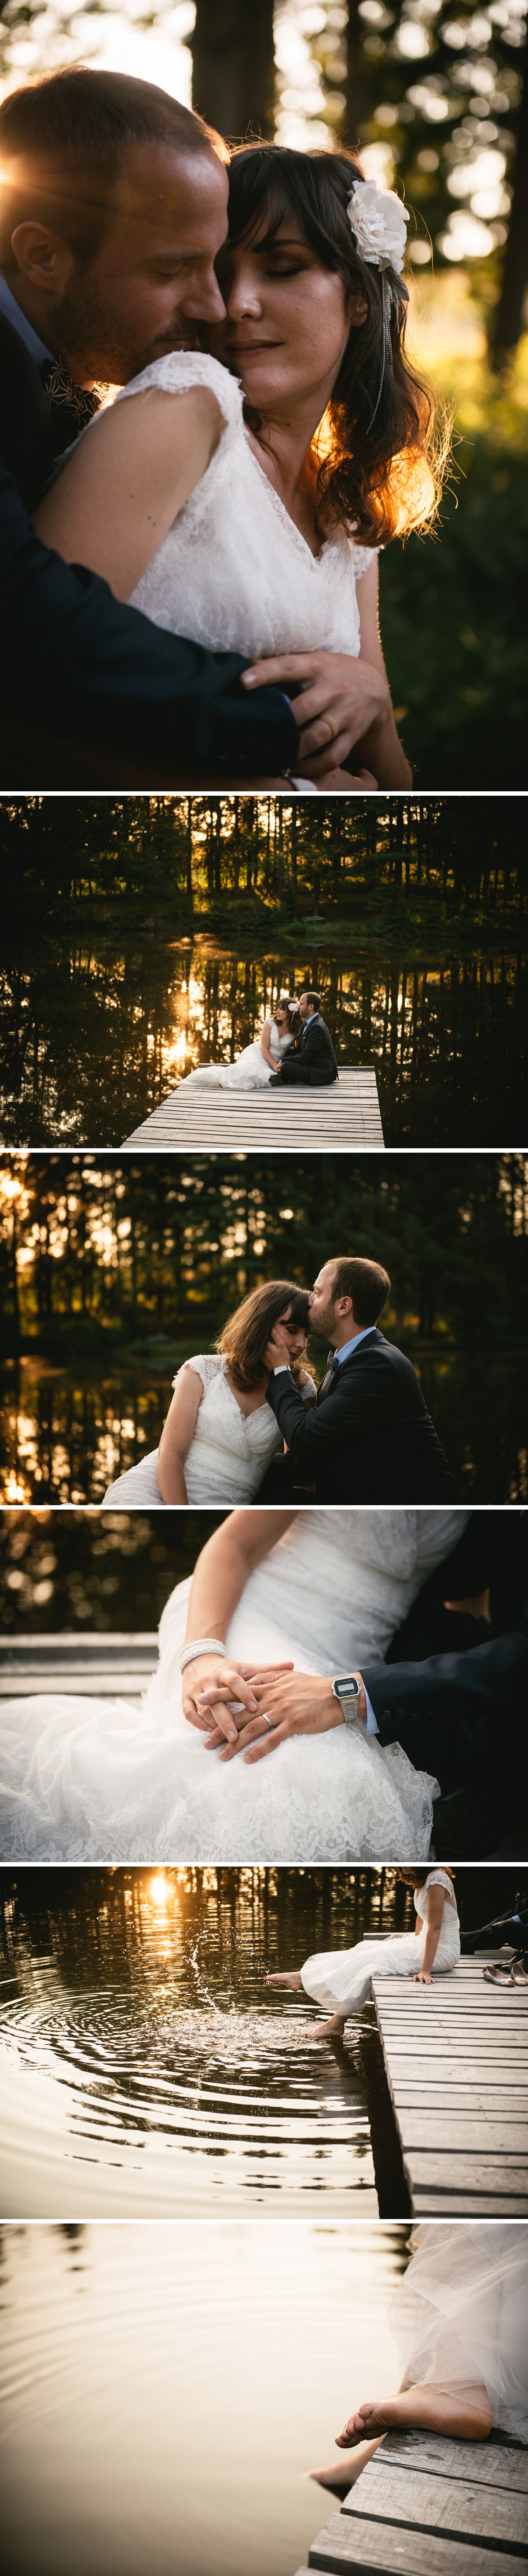 Photographe mariage dans les bois (2)